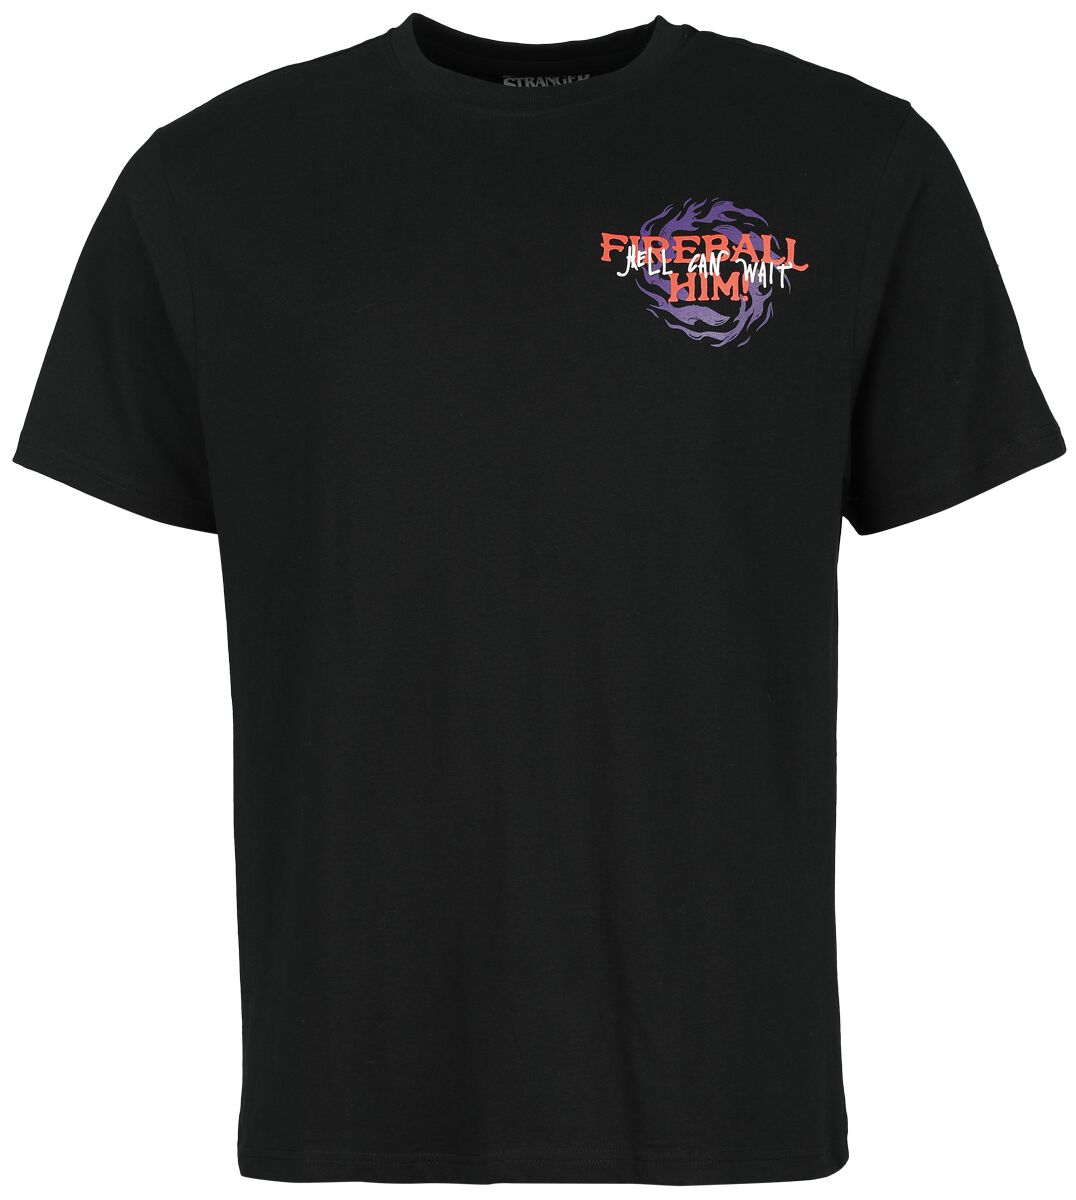 Stranger Things T-Shirt - Fireball Him - S bis L - für Männer - Größe S - schwarz  - Lizenzierter Fanartikel